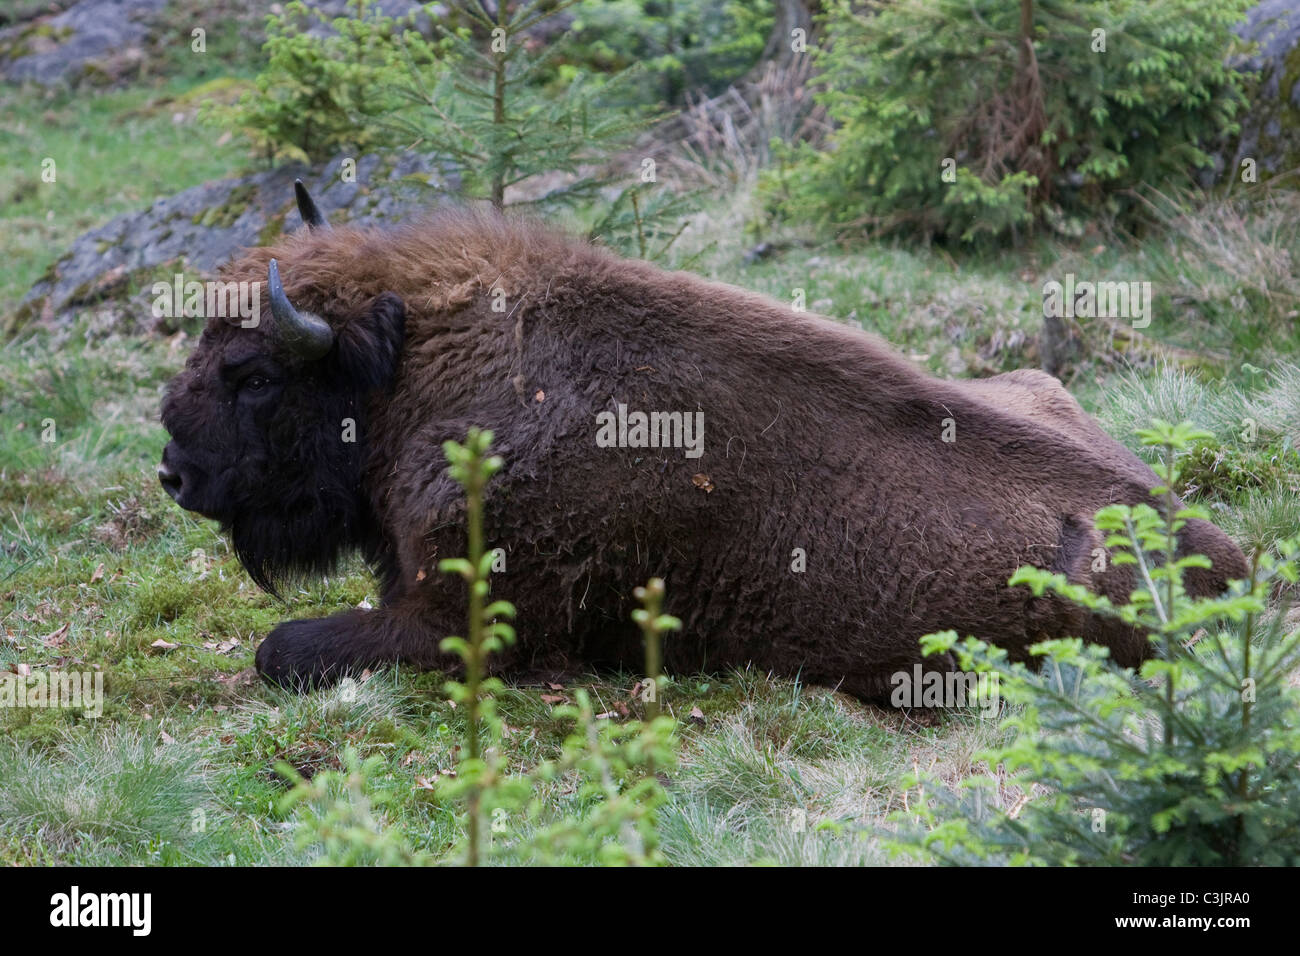 Wisent, Bison bonasus, NP Bayerischer Wald, Bavarian forest national park Stock Photo